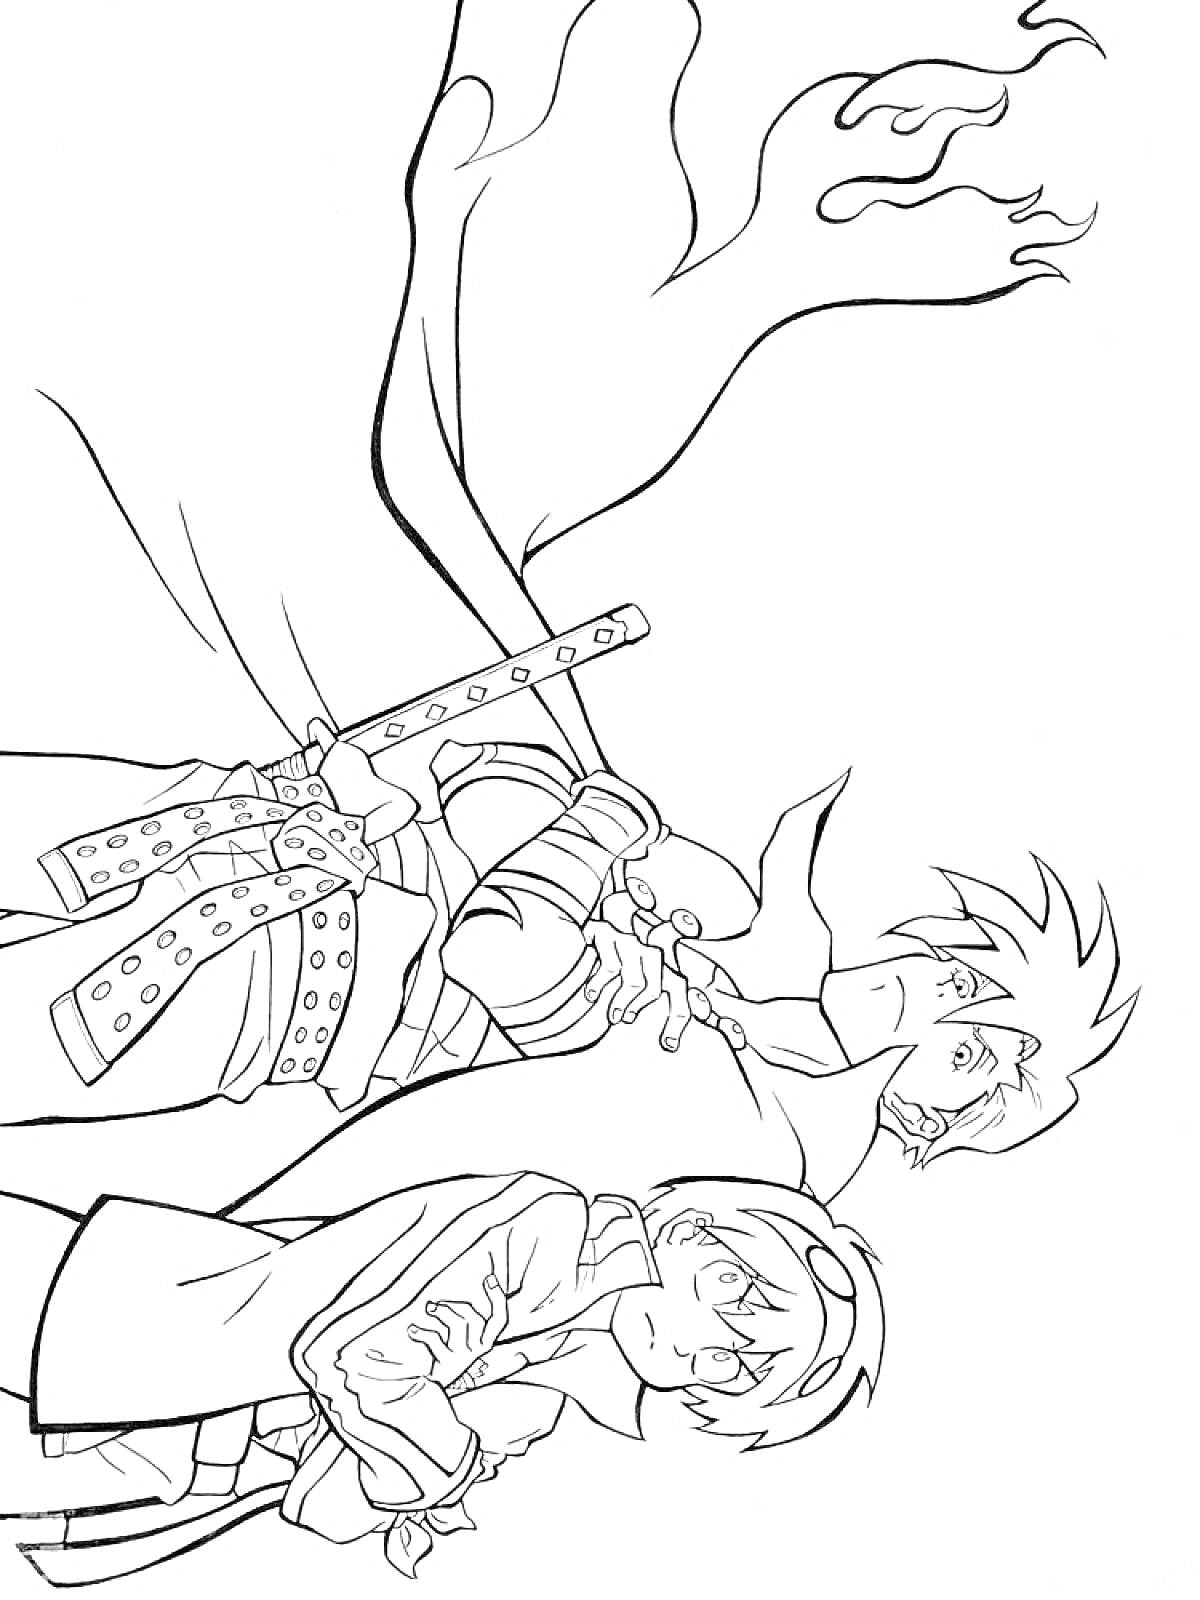 Раскраска Два персонажа из Гуррен-Лаганн, верхний держит катану в руке, у обоих развеваются одежды, на заднем плане видны линии, изображающие движение или ветер.